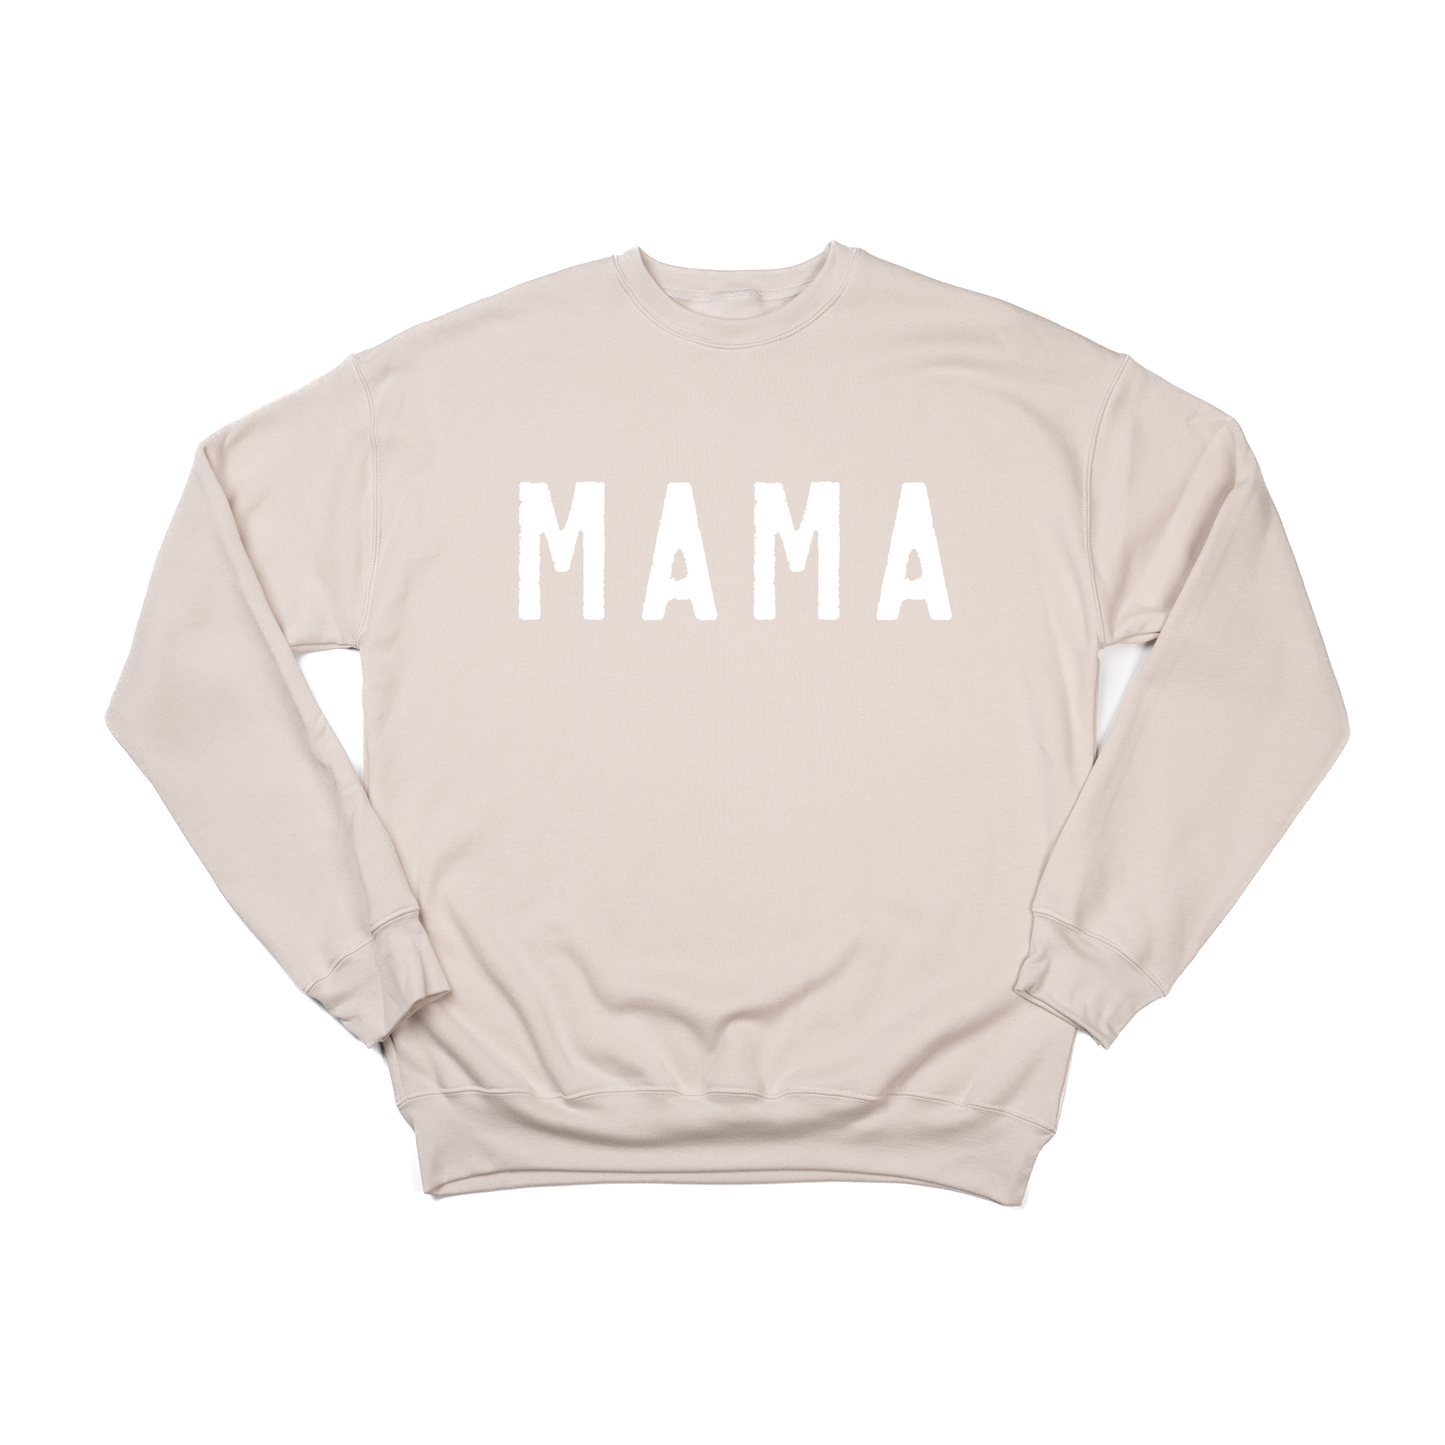 Mama (Rough, White) - Sweatshirt (Stone)